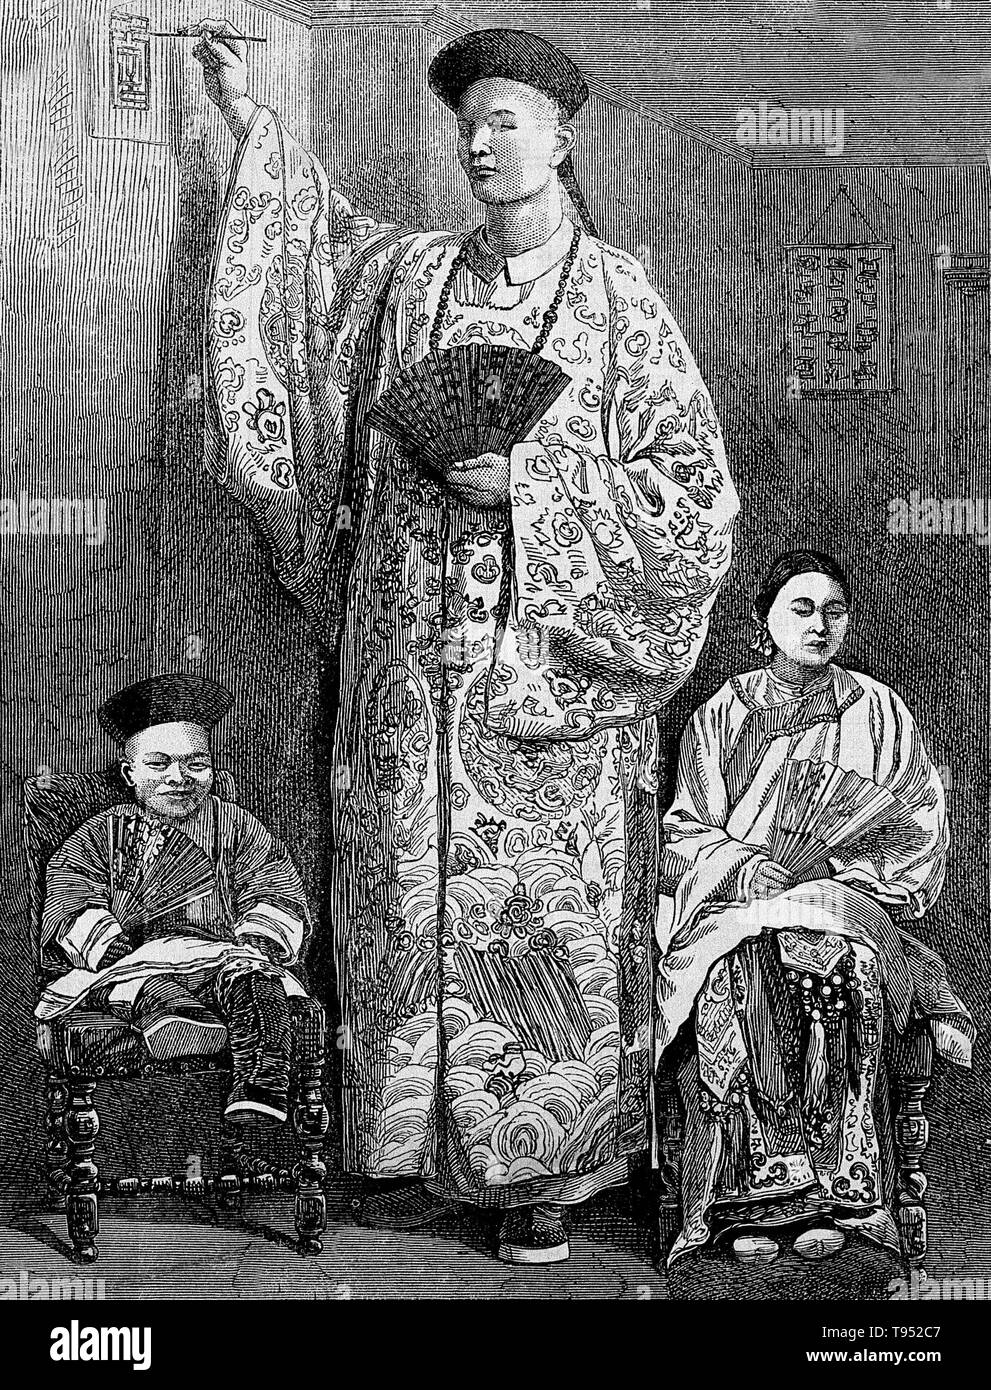 Chang Yu-cantare il gigante cinese con la moglie, King-Foo e Chung Mow, un nano. Zhan Shichai AKA Chang Woo Gow (1841/47 - 5 novembre 1893) era un gigante cinese. La sua altezza è stato rivendicato da oltre 8 metri, ma non vi sono registrazioni di autorevoli. Egli ha lasciato la Cina nel 1865 in viaggio a Londra dove è comparso sul palco più tardi in giro per l'Europa e per gli Stati Uniti e Australia come 'Chang il gigante cinese". Foto Stock